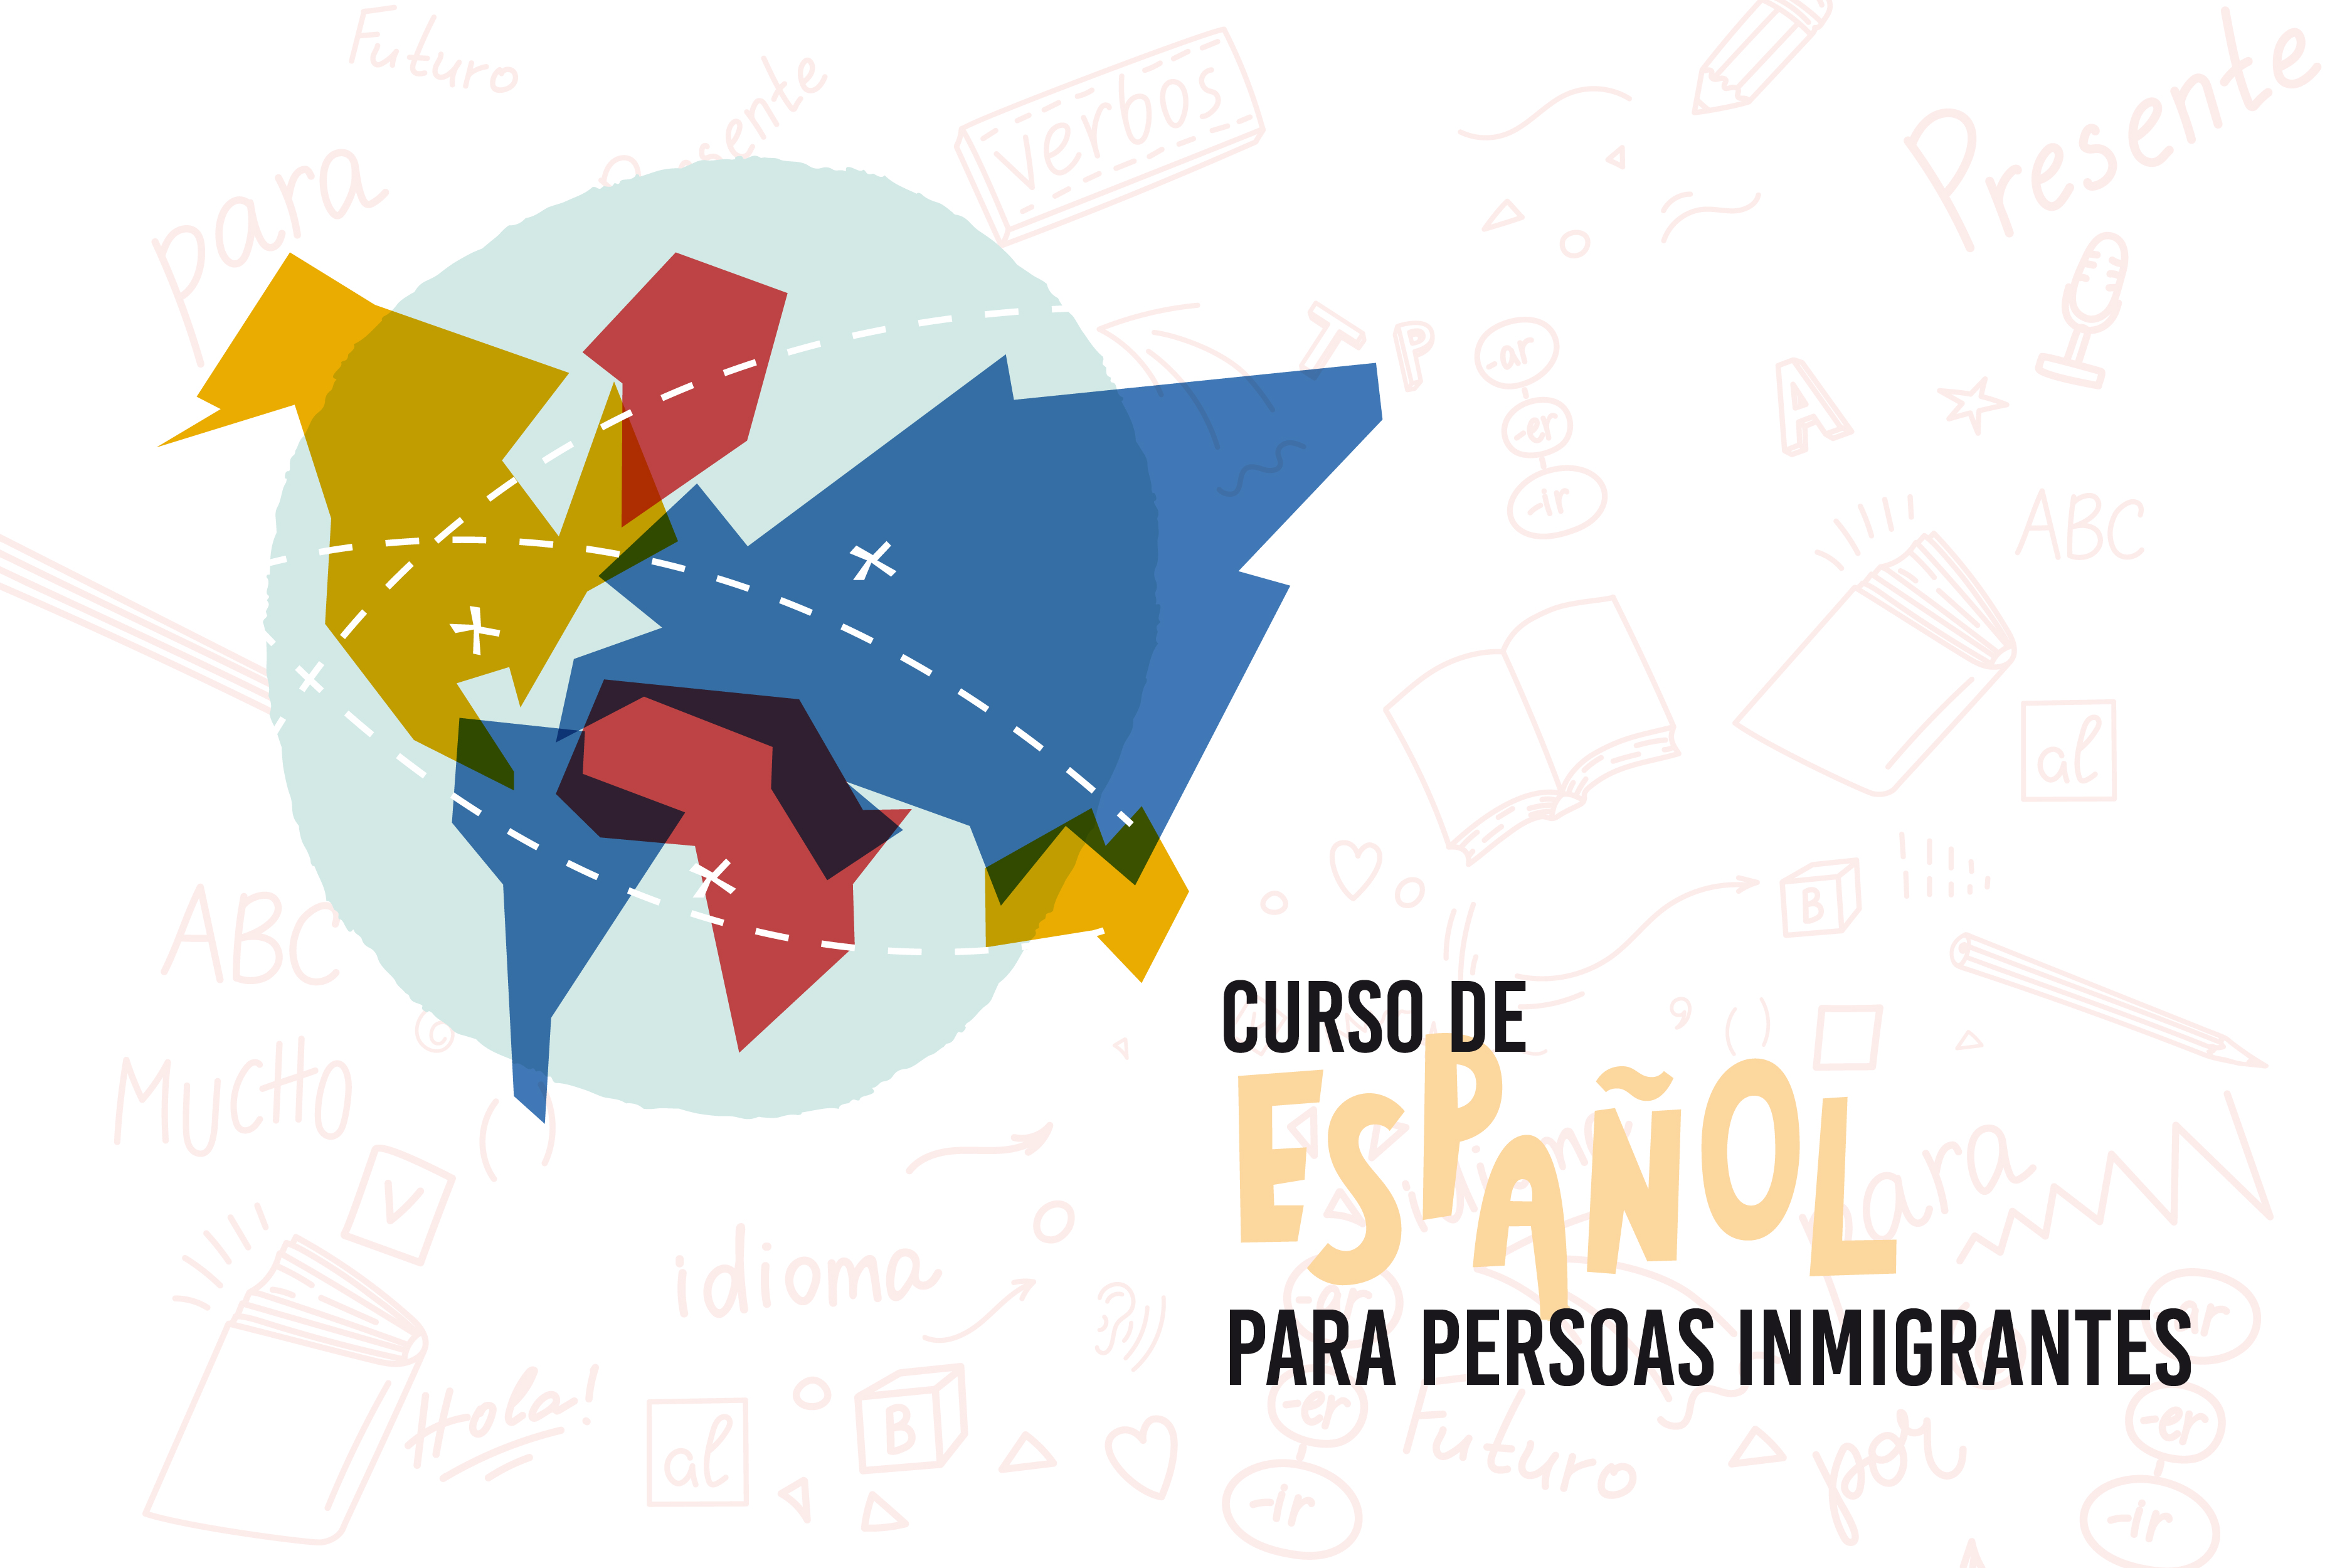  
		Arrancan en Pontevedra e Vigo os dous cursos de español para persoas inmigrantes que pechan a sexta edición do programa provincial
	